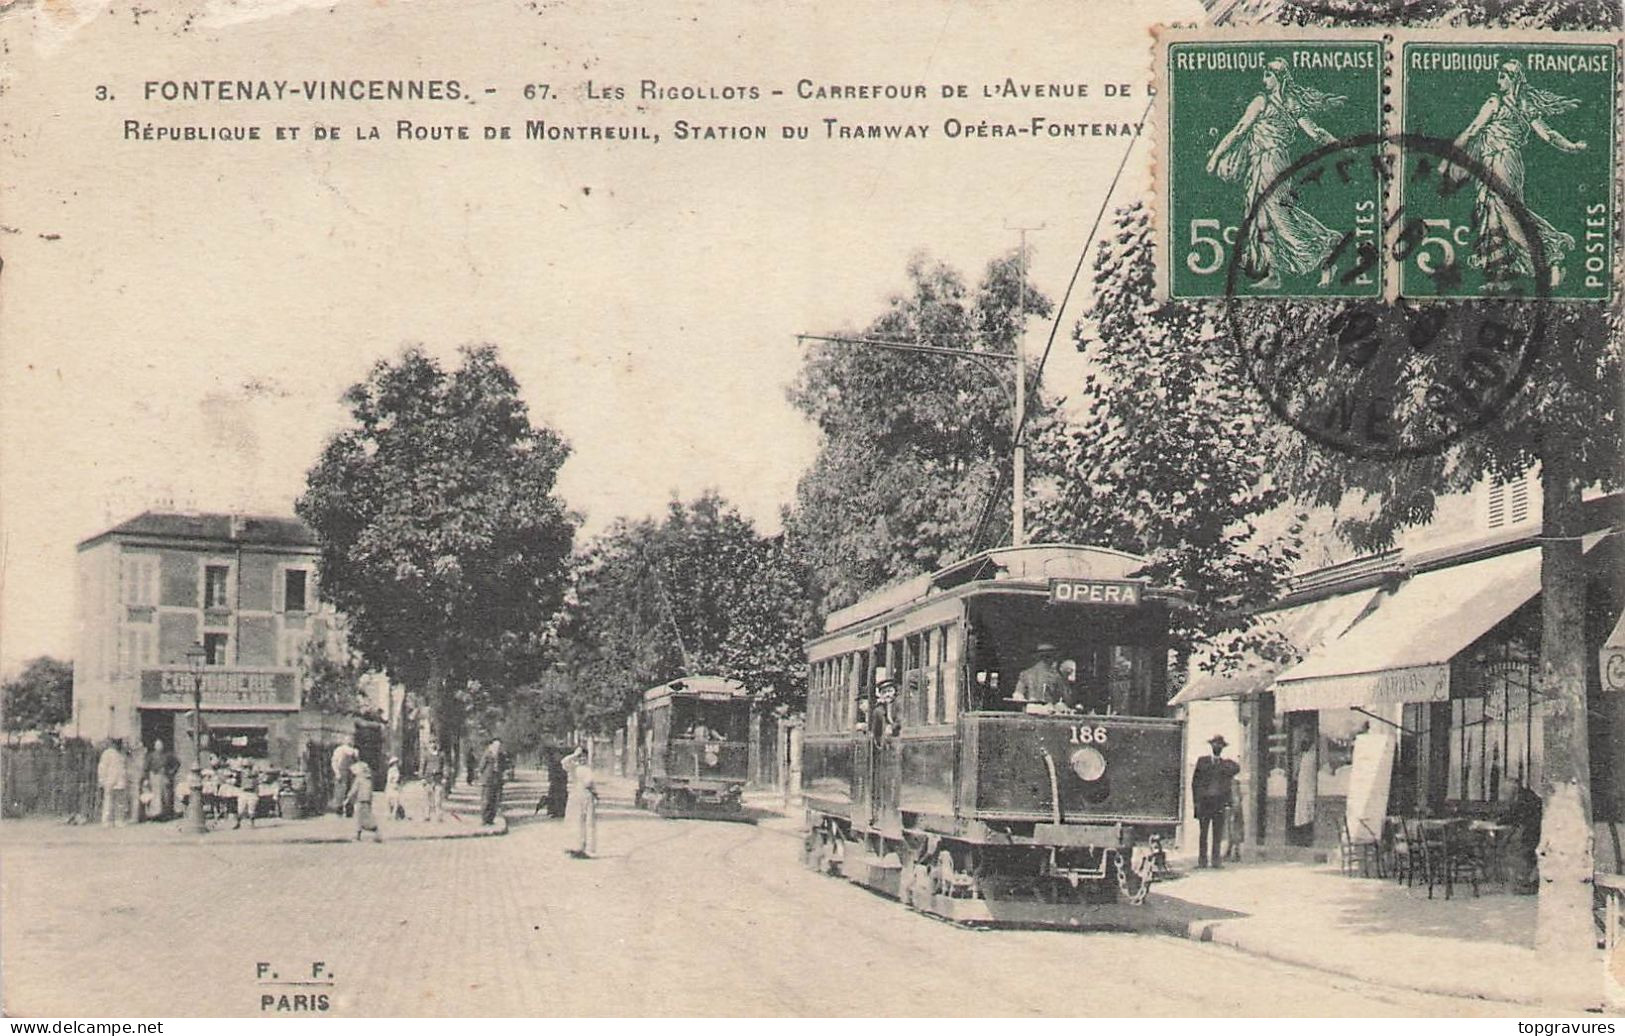 FONTENAY VINCENNES (94) - LES RIGOLLOTS, CARREFOUR DE L'AV. REPUBLIQUE - Vincennes